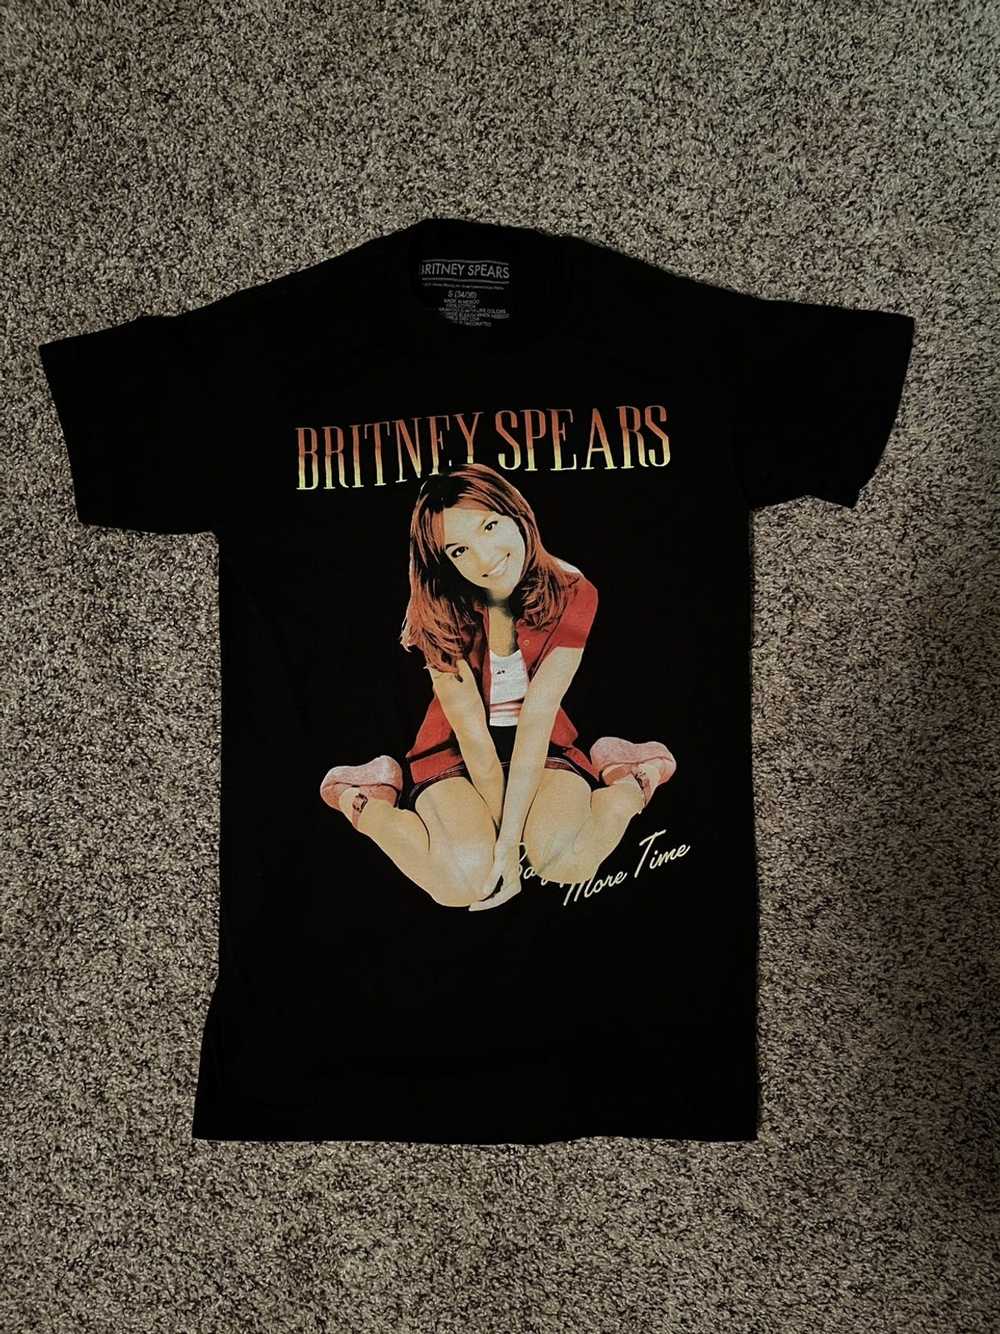 Vintage Britney Spears Shirt - image 1